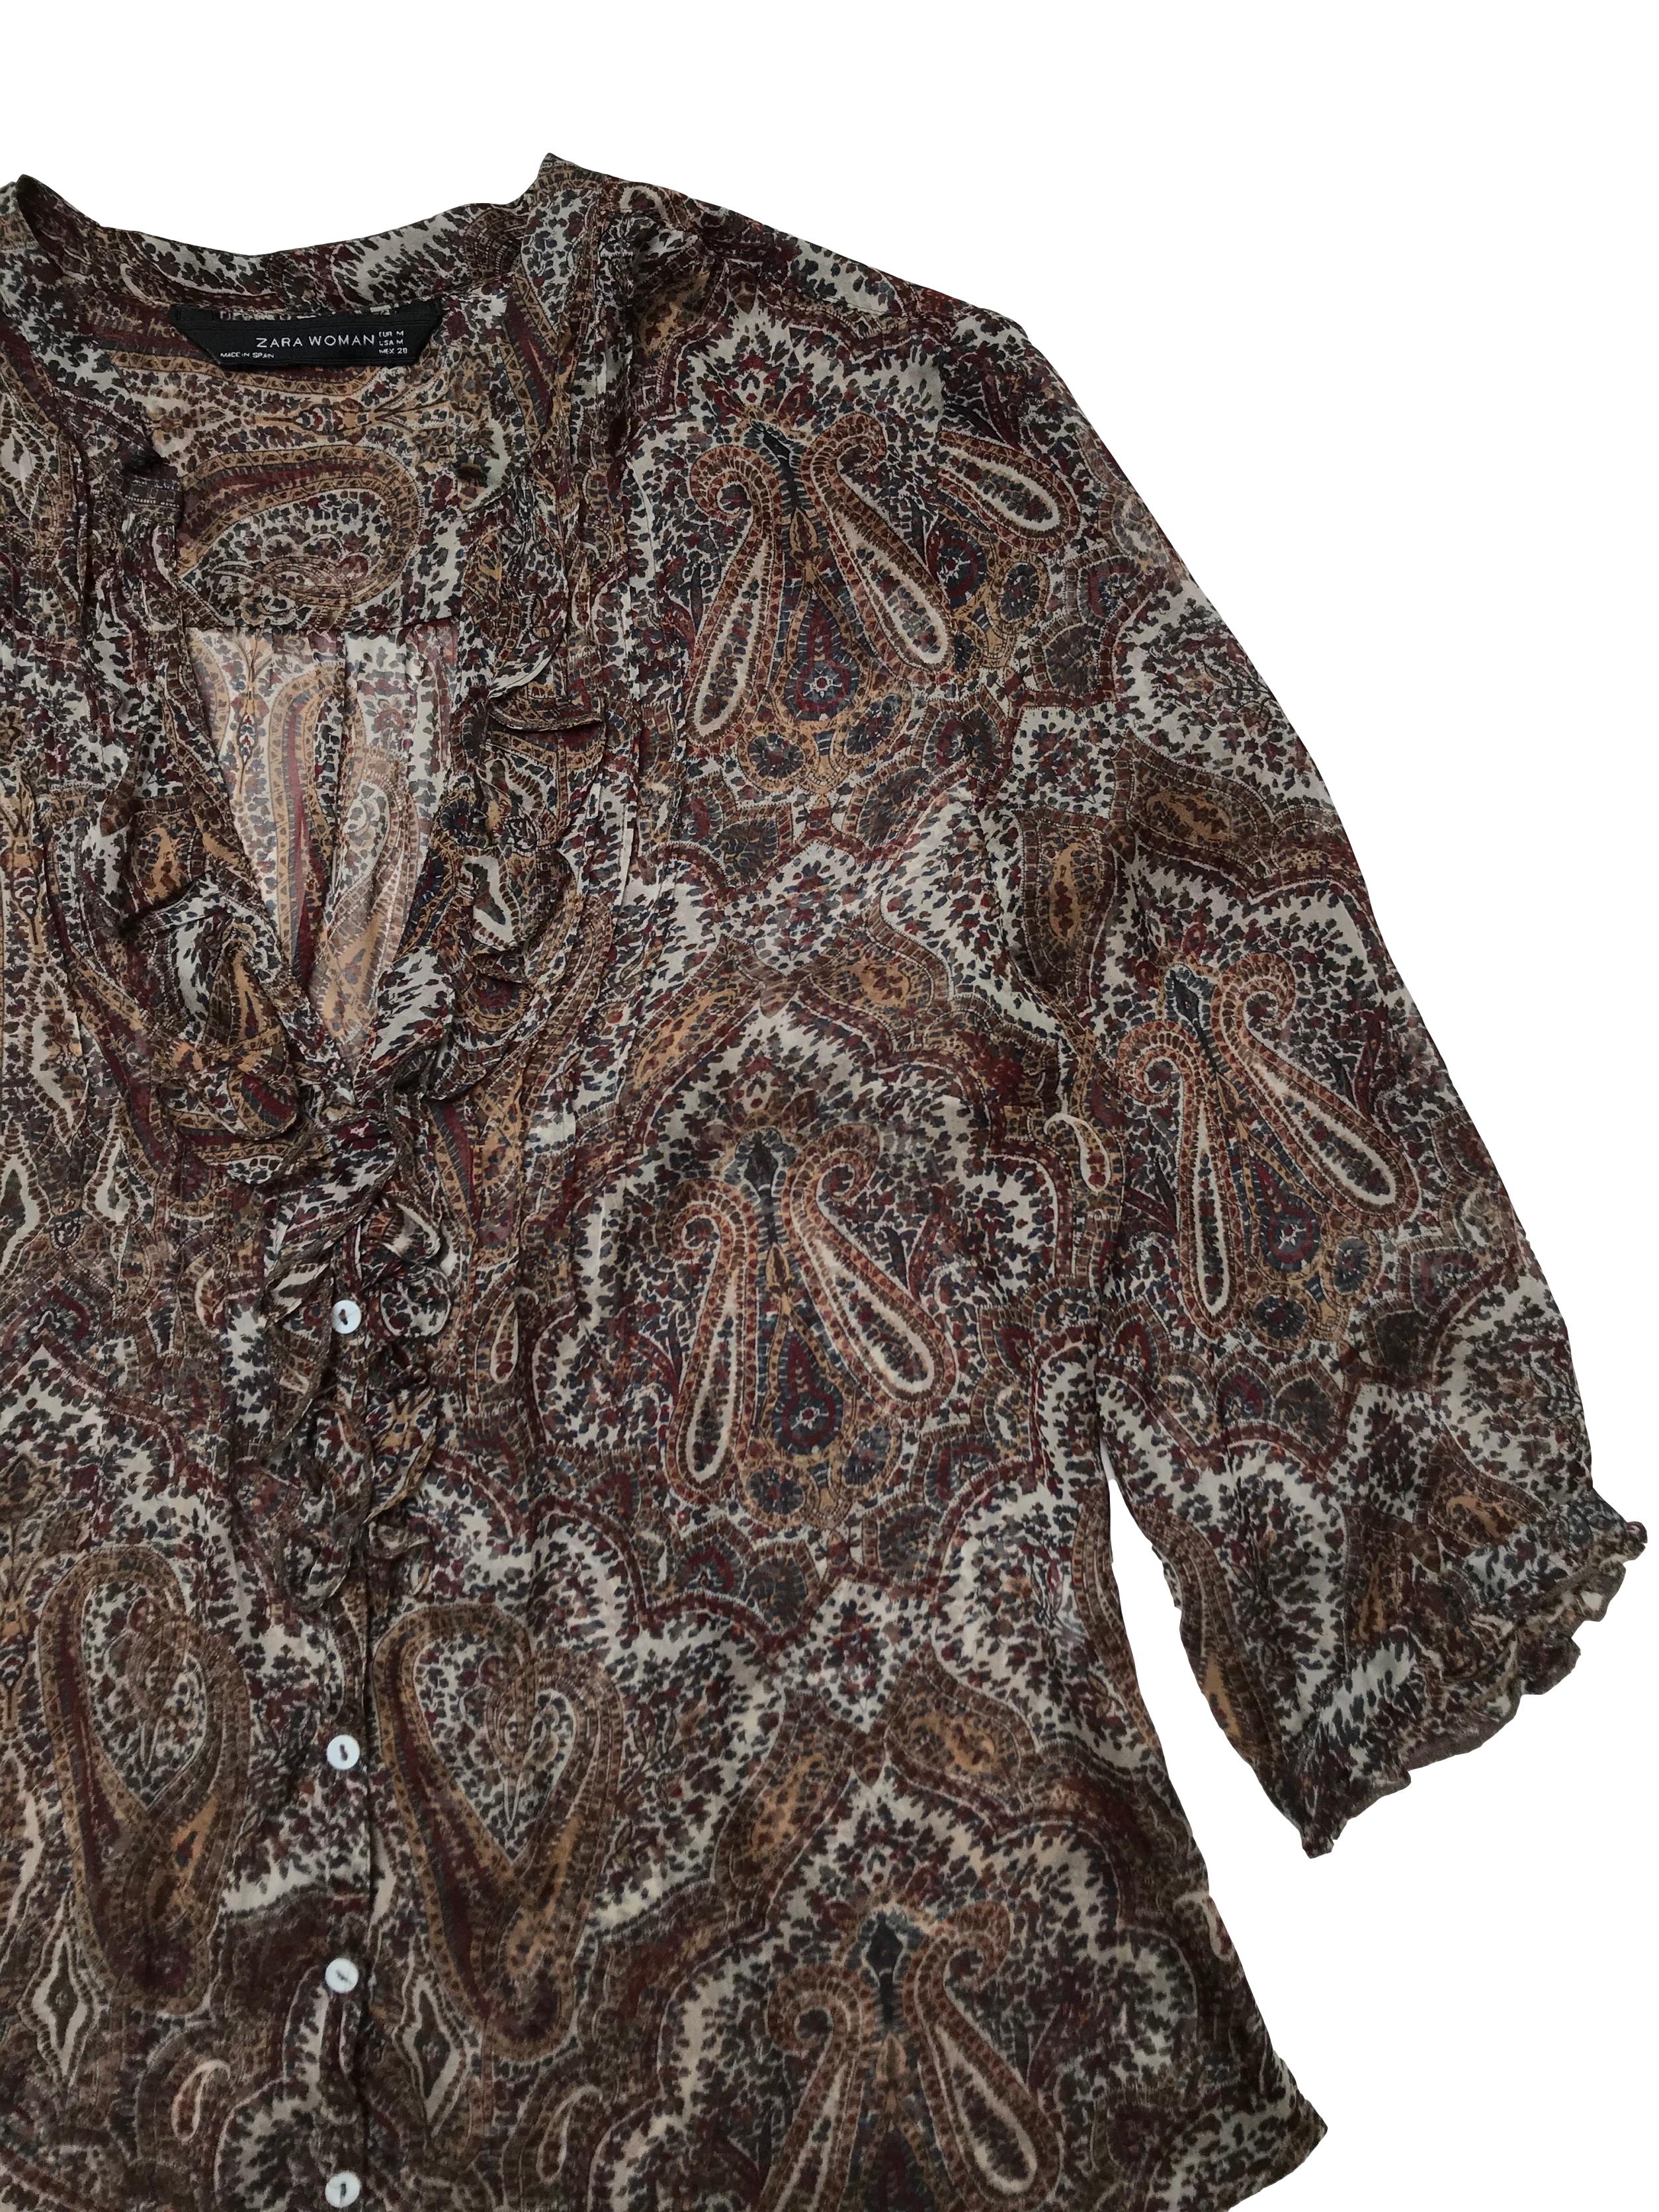 Blusa Zara 100% seda con estampado paisley, escote en V con bobos  y botones delanteros, mangas 3/4. Busto 98cm Largo 55-65cm